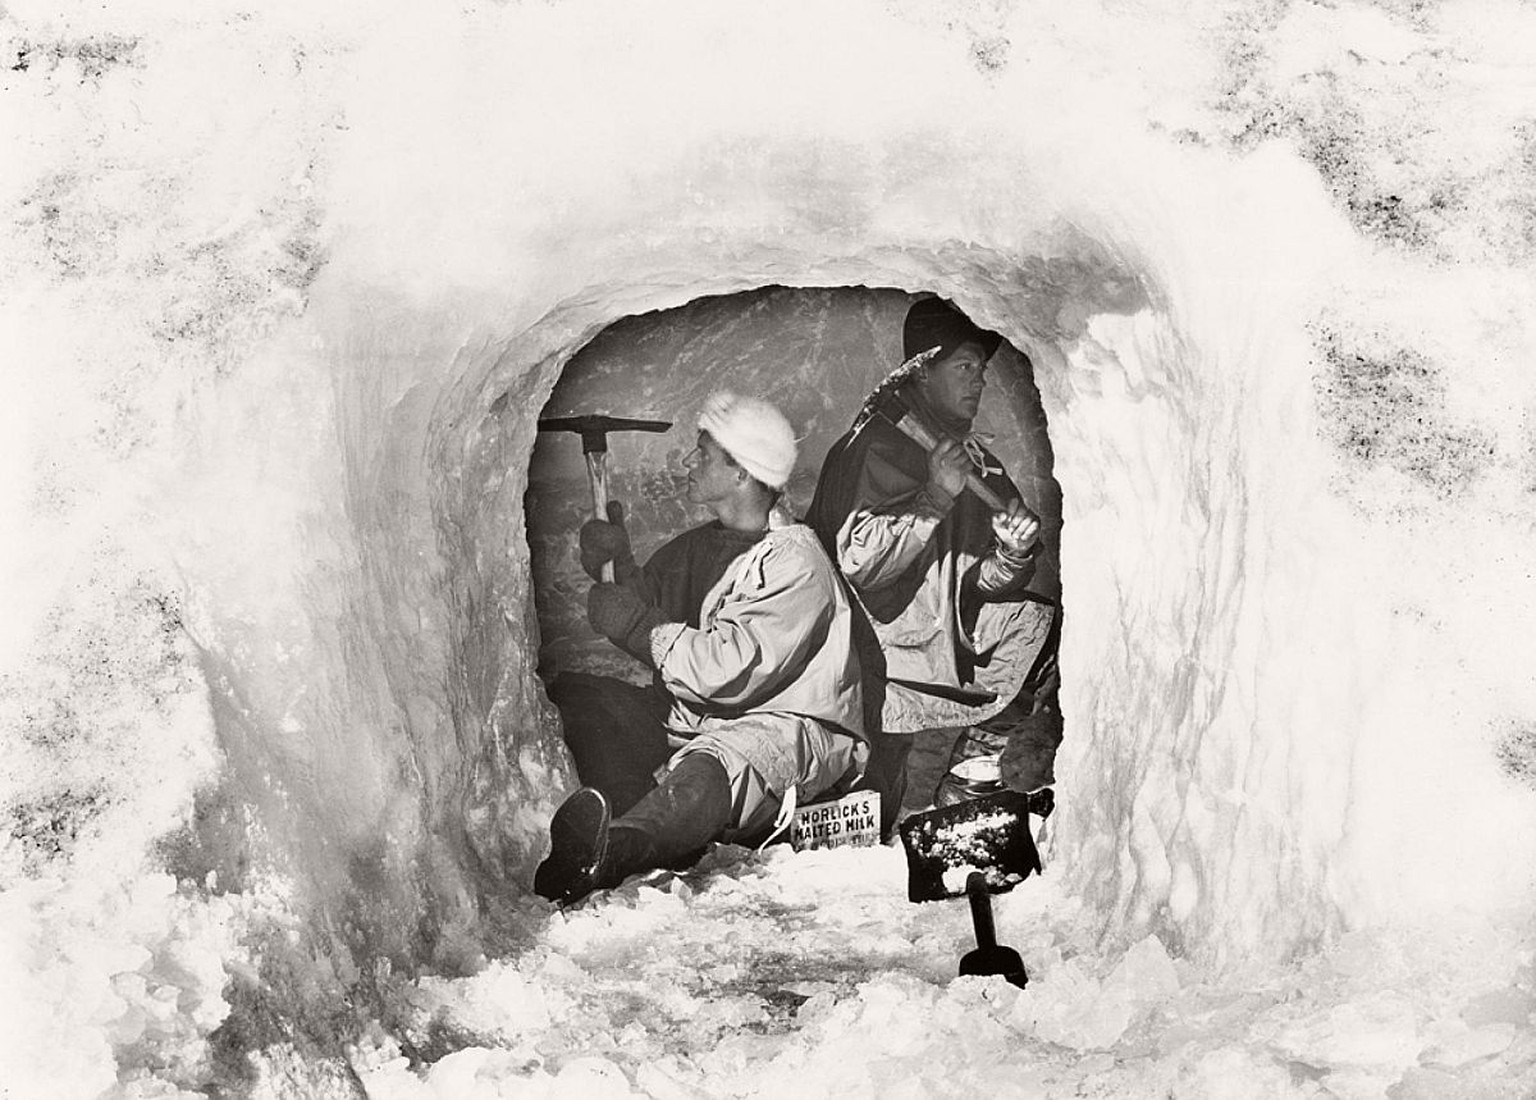 Leutnant Evans und der Biologe Nelson meisseln am 12. Januar 1911 eine Eishöhle zur Lagerung von Lebensmitteln – und auch sie findet Scotts grösste Bewunderung.